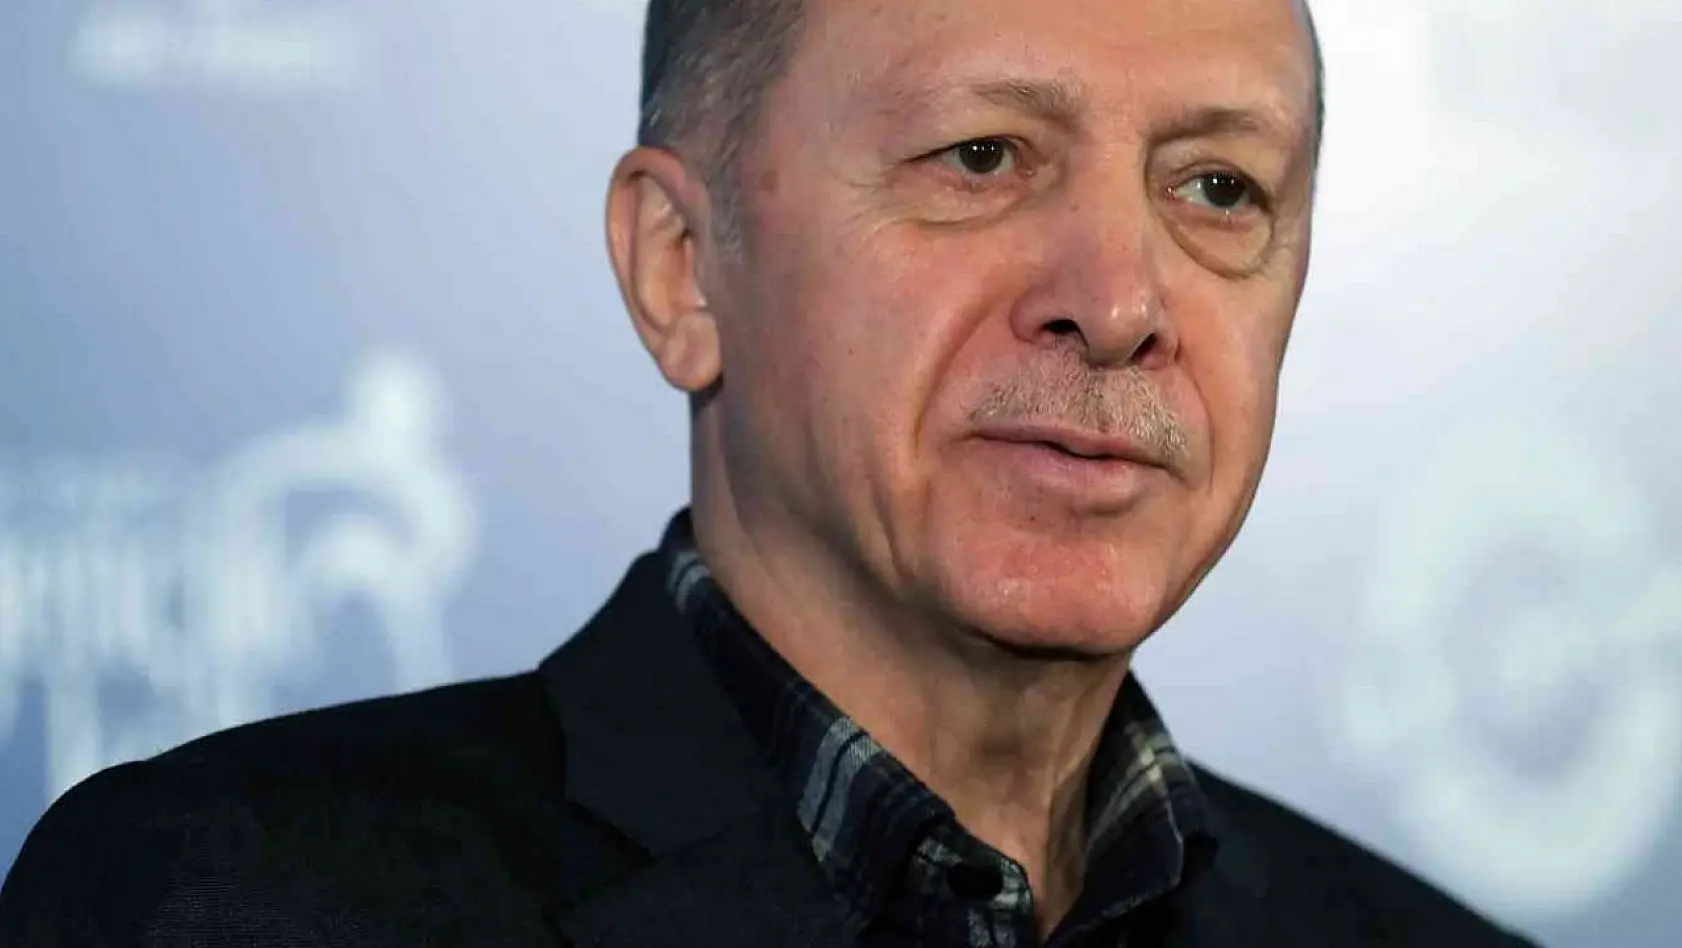 Cumhurbaşkanı Erdoğan: '10 Mart'ta yetkimi kullanacağım, ondan sonra 60 gün süre var'